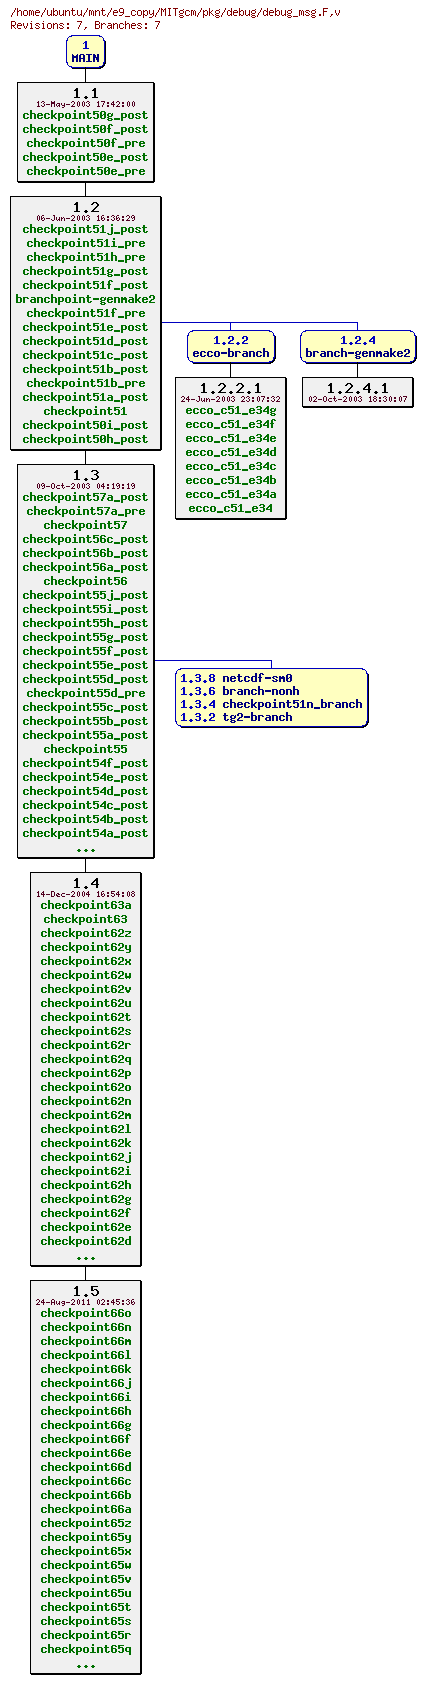 Revisions of MITgcm/pkg/debug/debug_msg.F